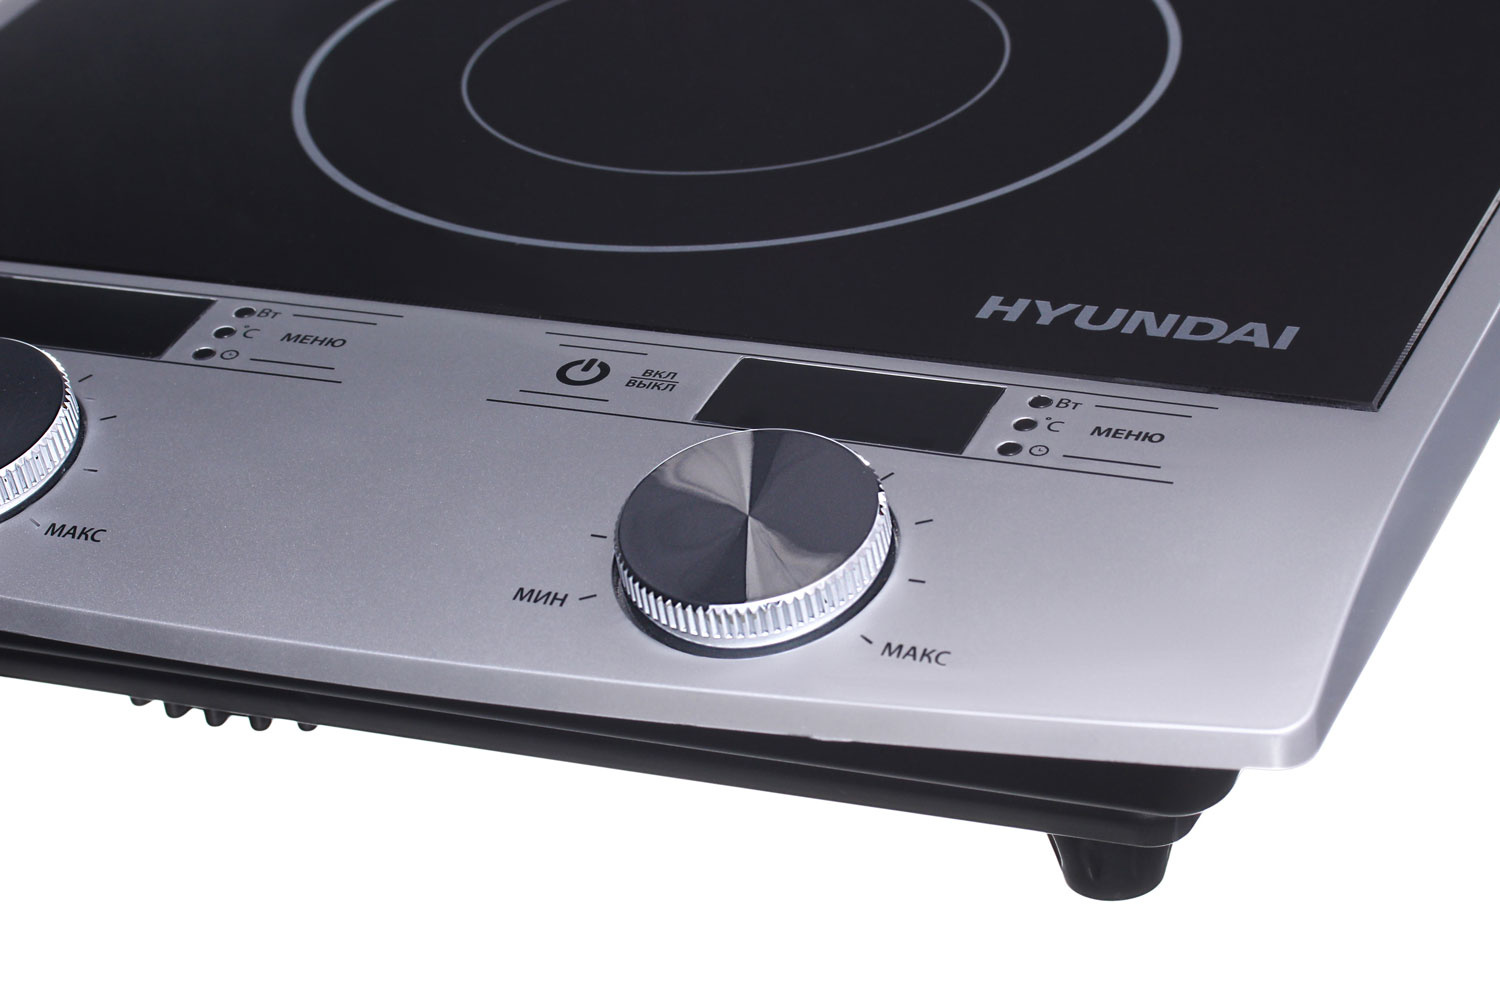 Плита Индукционная Hyundai HYC-0103 серебристый/черный стеклокерамика (настольная)